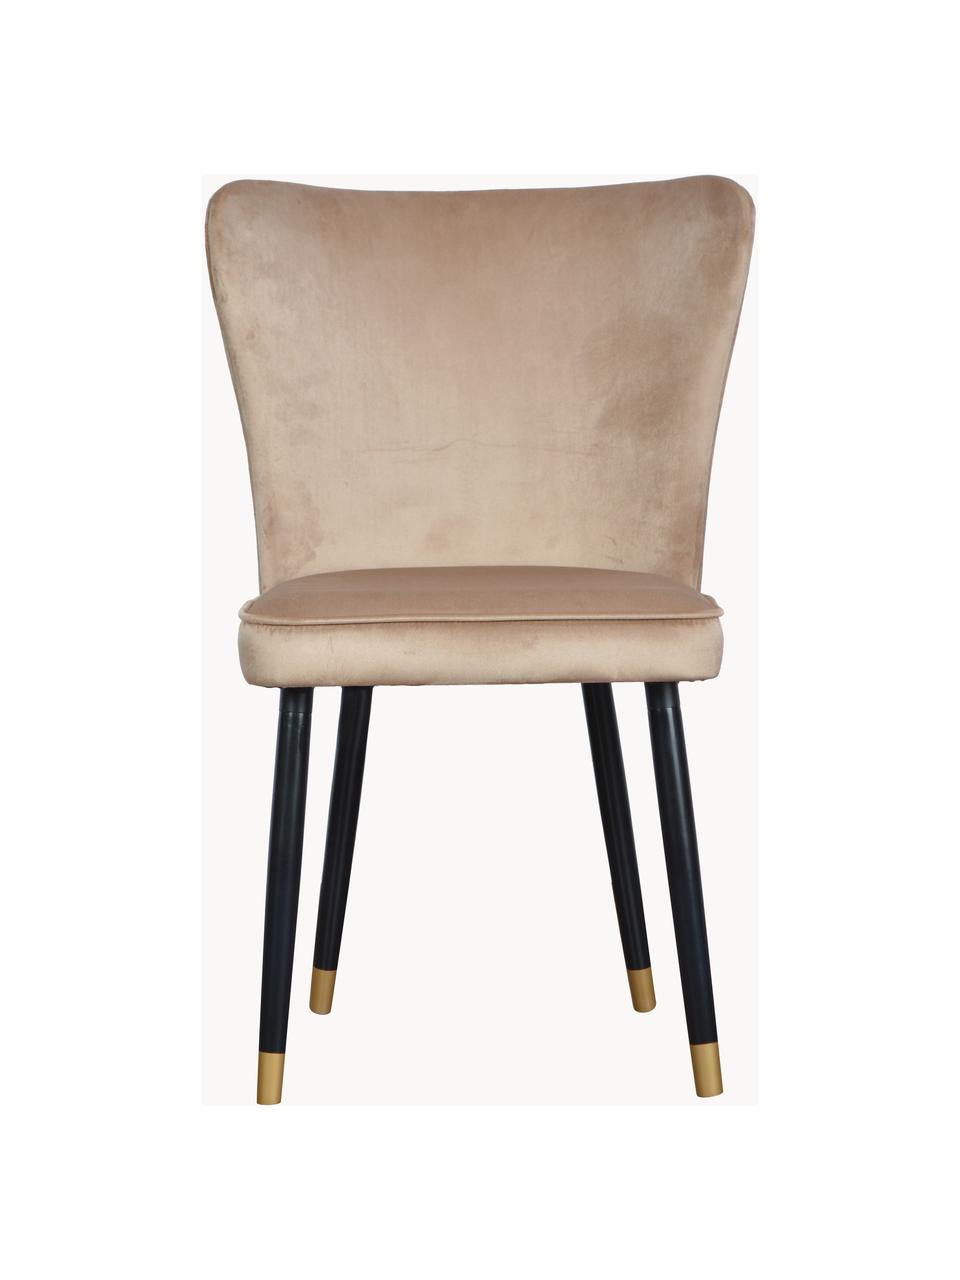 Krzesło tapicerowane z aksamitu Monti, Tapicerka: aksamit (100% poliester), Nogi: drewno naturalne, fornir, Beżowy aksamit, S 55 x G 66 cm